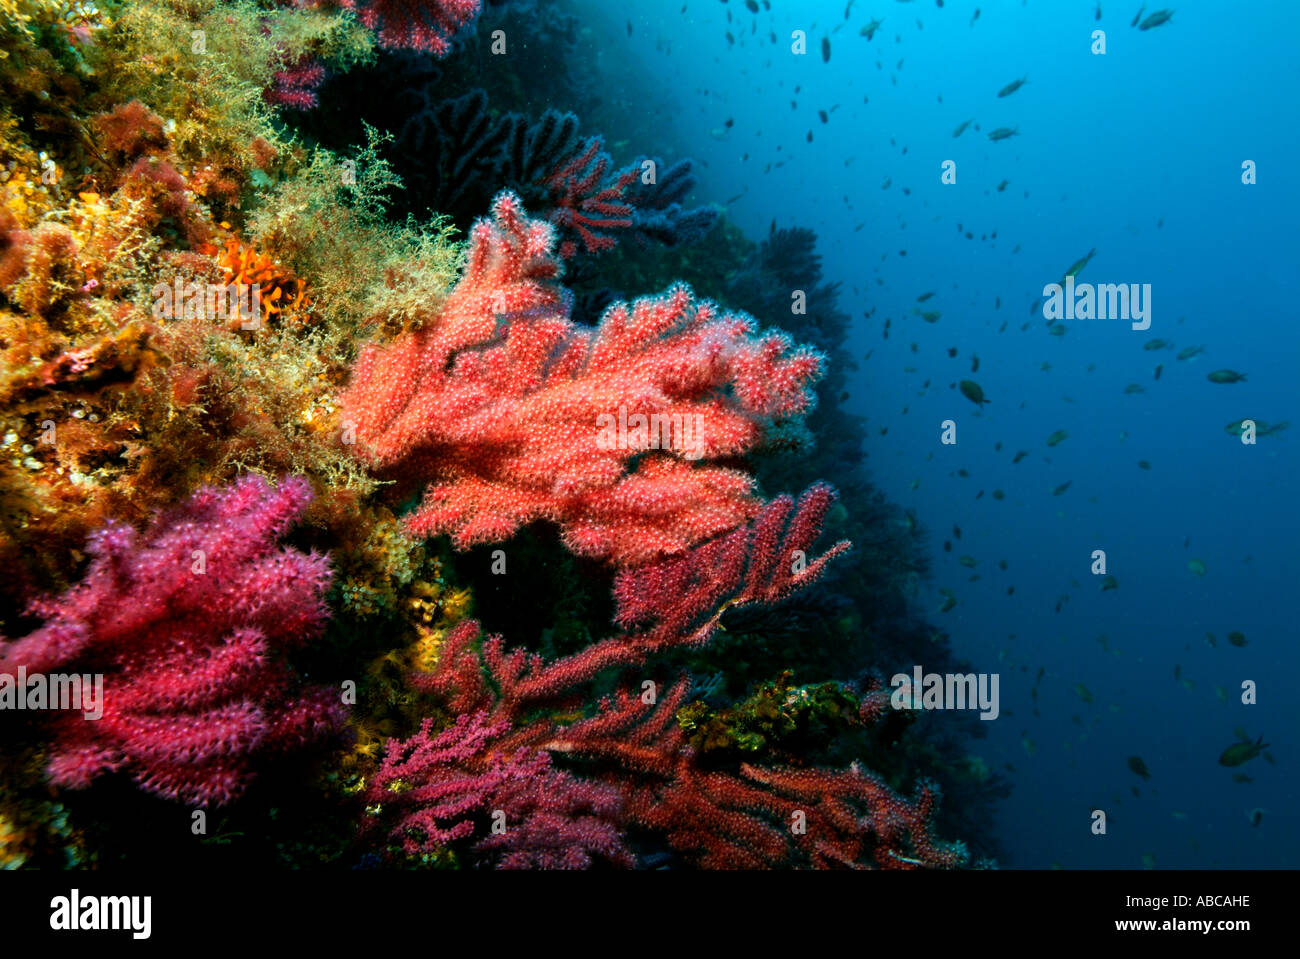 Gorgonie rosse (Alcyonium palmatum) su di una scogliera di corallo Foto Stock